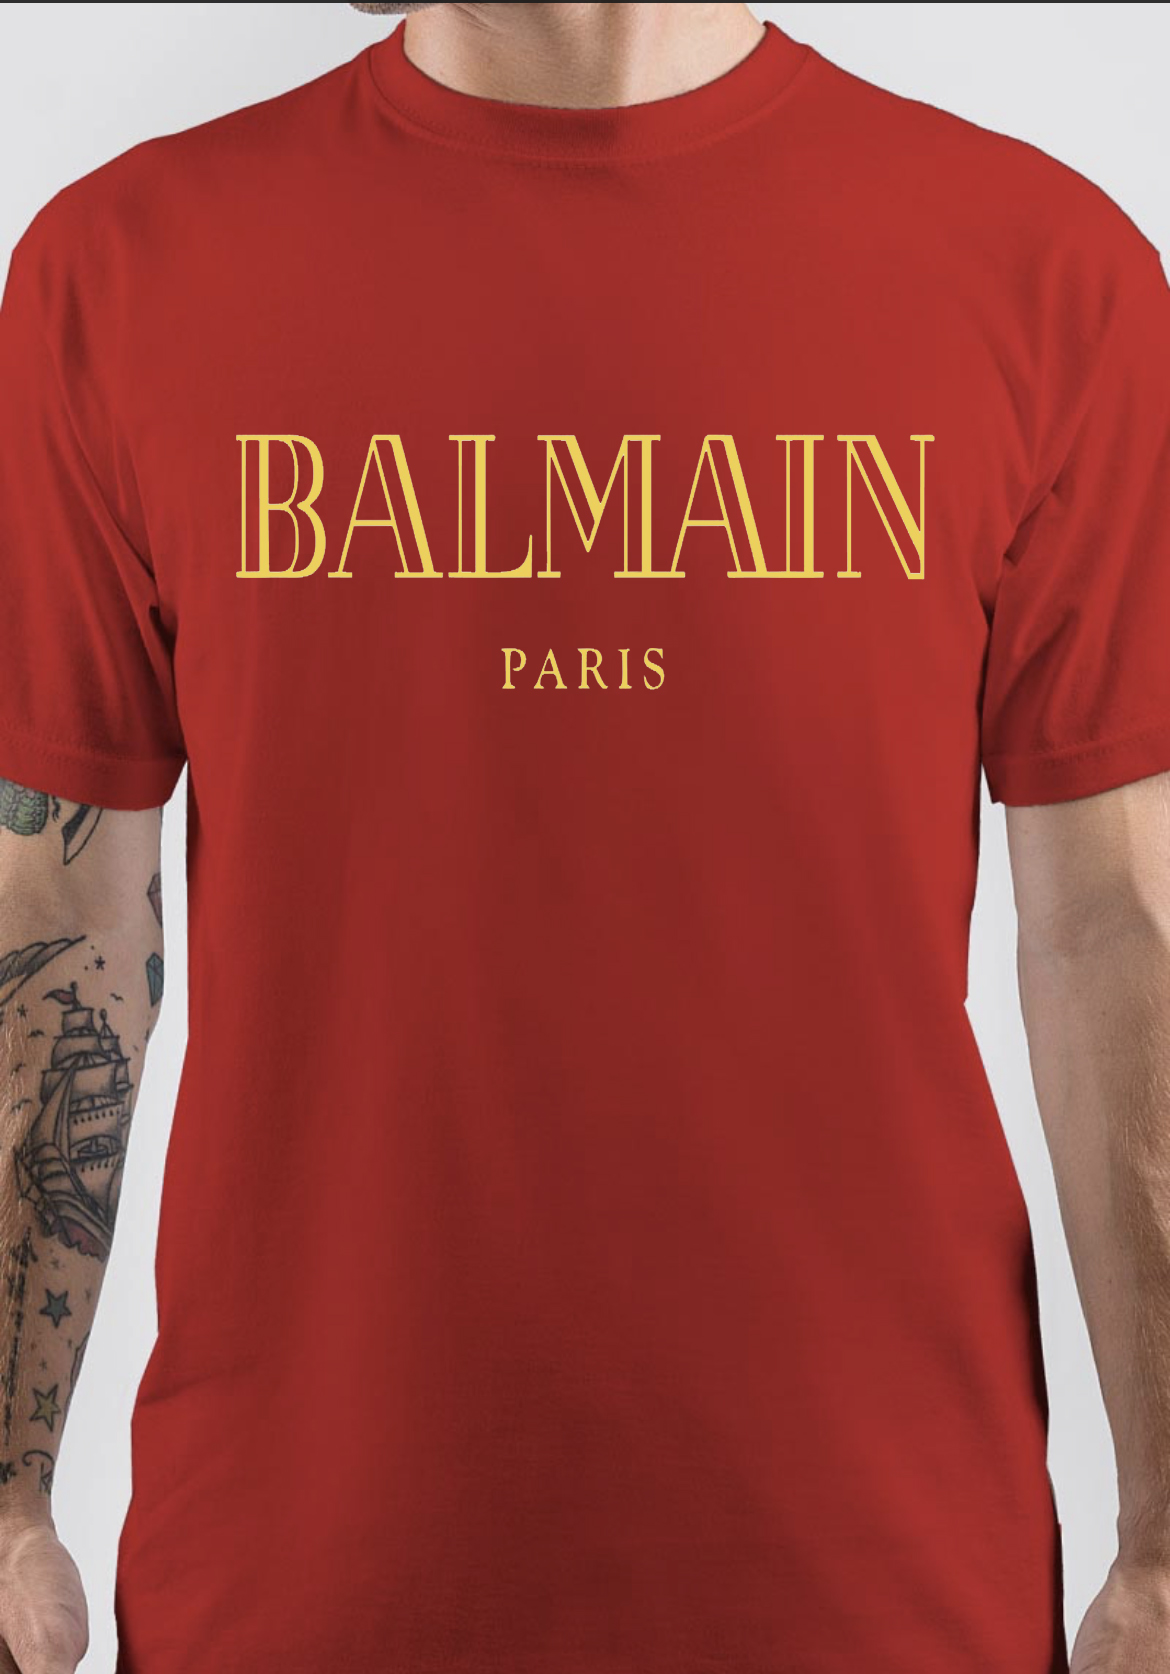 Balmain Paris T-Shirt - Shirts